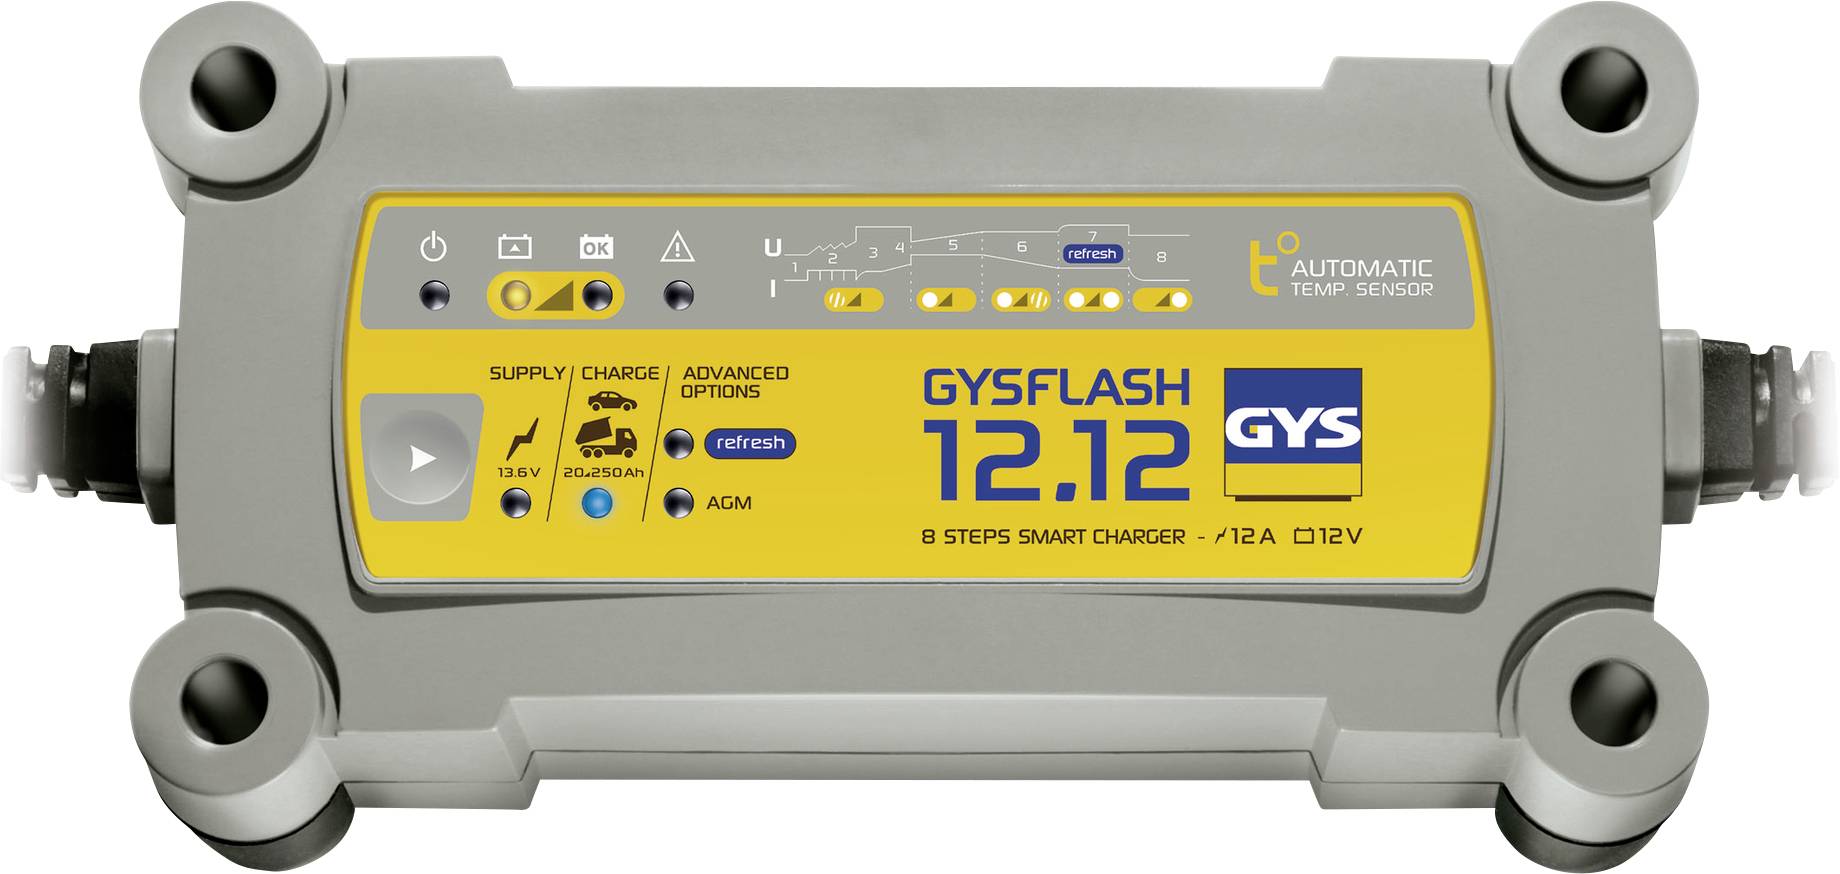 Chargeur de batterie GYSFLASH 12.12 pour batterie 12V de 20 à 250ah 029392